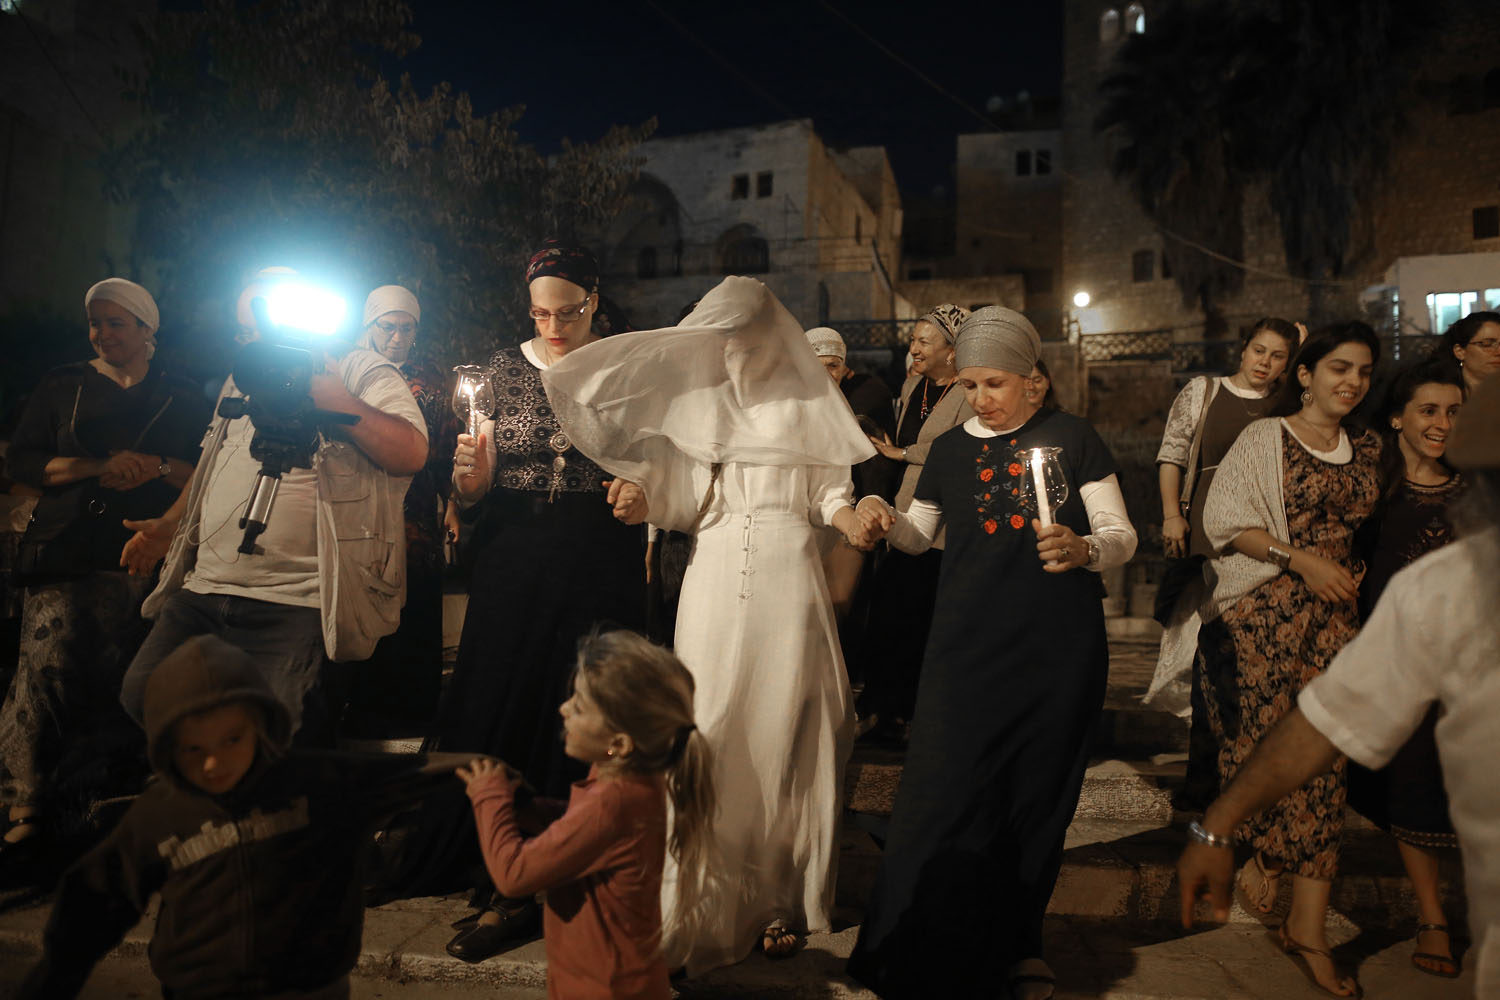 © / Menahem Kahana - AFP PHOTO - Photo éditée par Marina Passos - Cette photo représente une jeune mariée israélienne, Yael Levi, accompagnée de ses amis et ses proches vers la place près de la "Cave des Patriarches", aussi connue sous le nom de la Mosquée Ibrahimi et lieu saint des deux communautés juives et musulmanes, lors de son mariage (22 septembre 2016).